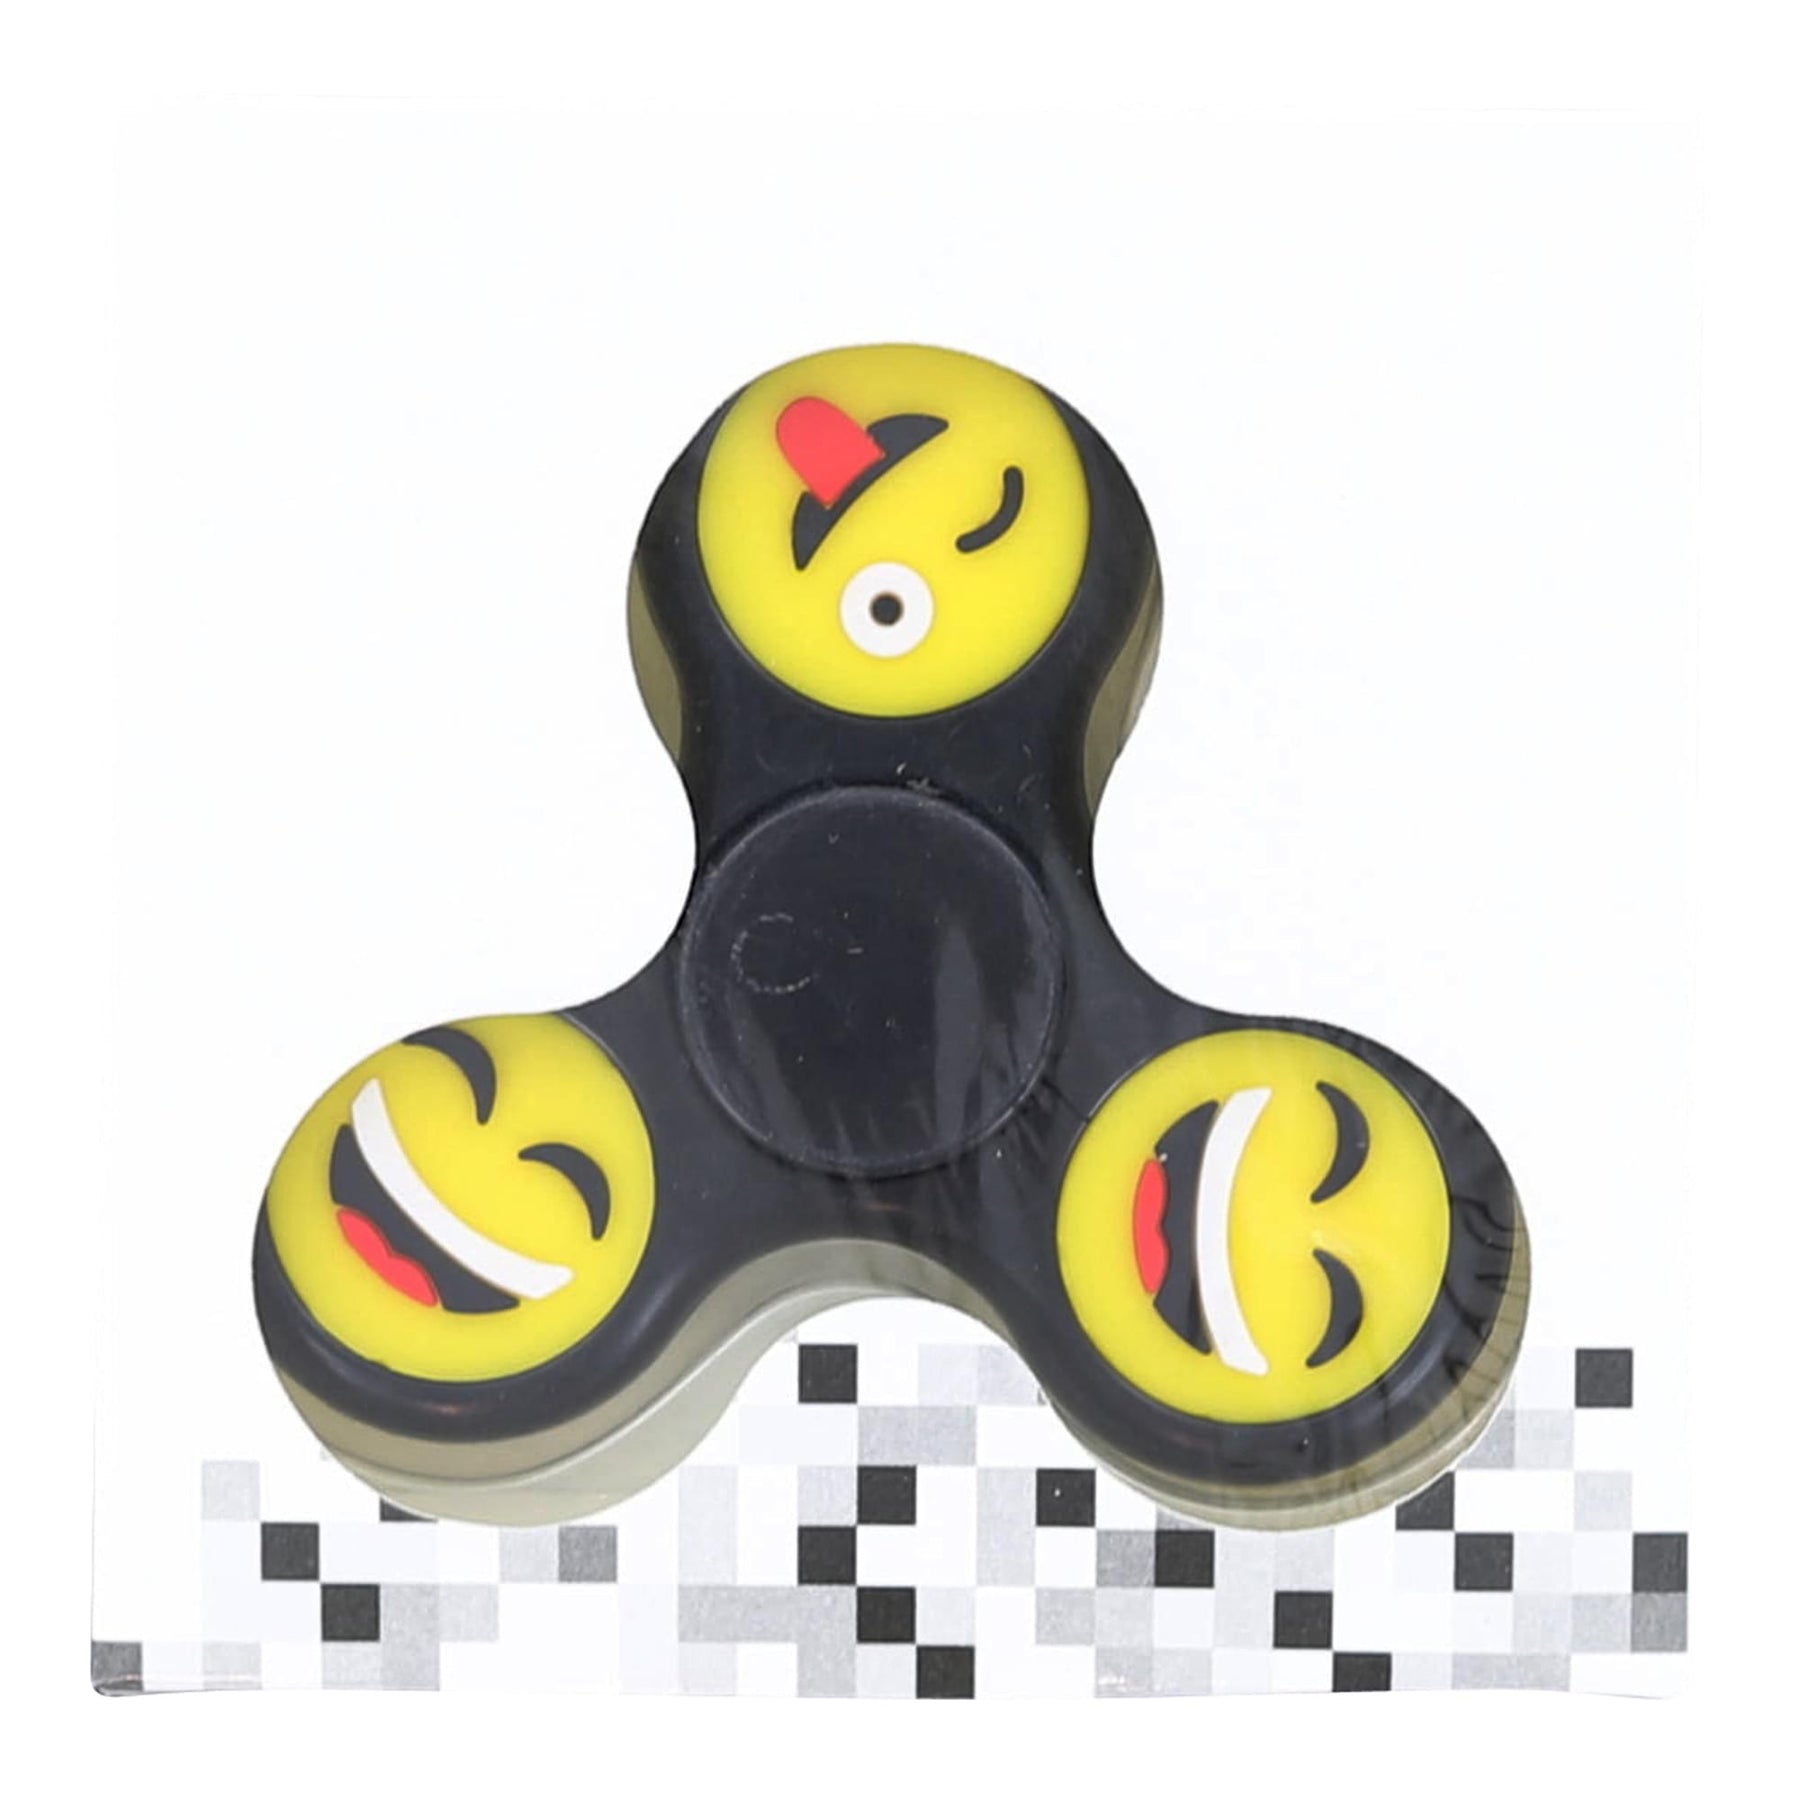 Emoji Solid Color Fidget Spinner | Black | Smile